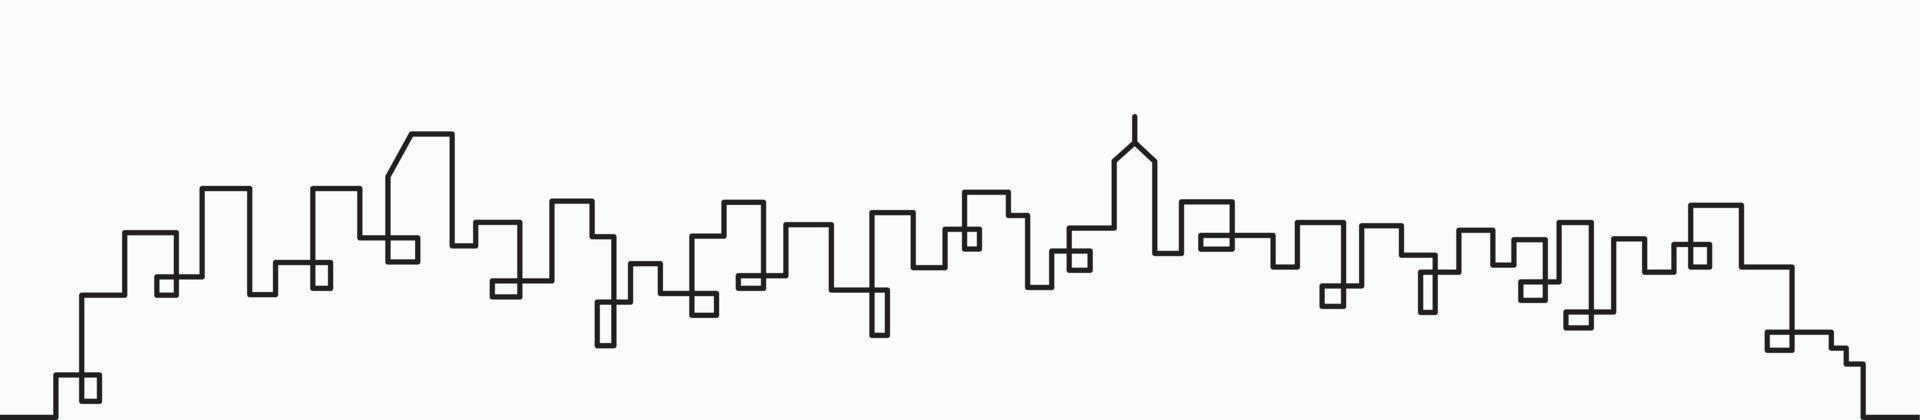 modern stad horisont kontinuerlig översikt teckning på vit bakgrund. vektor